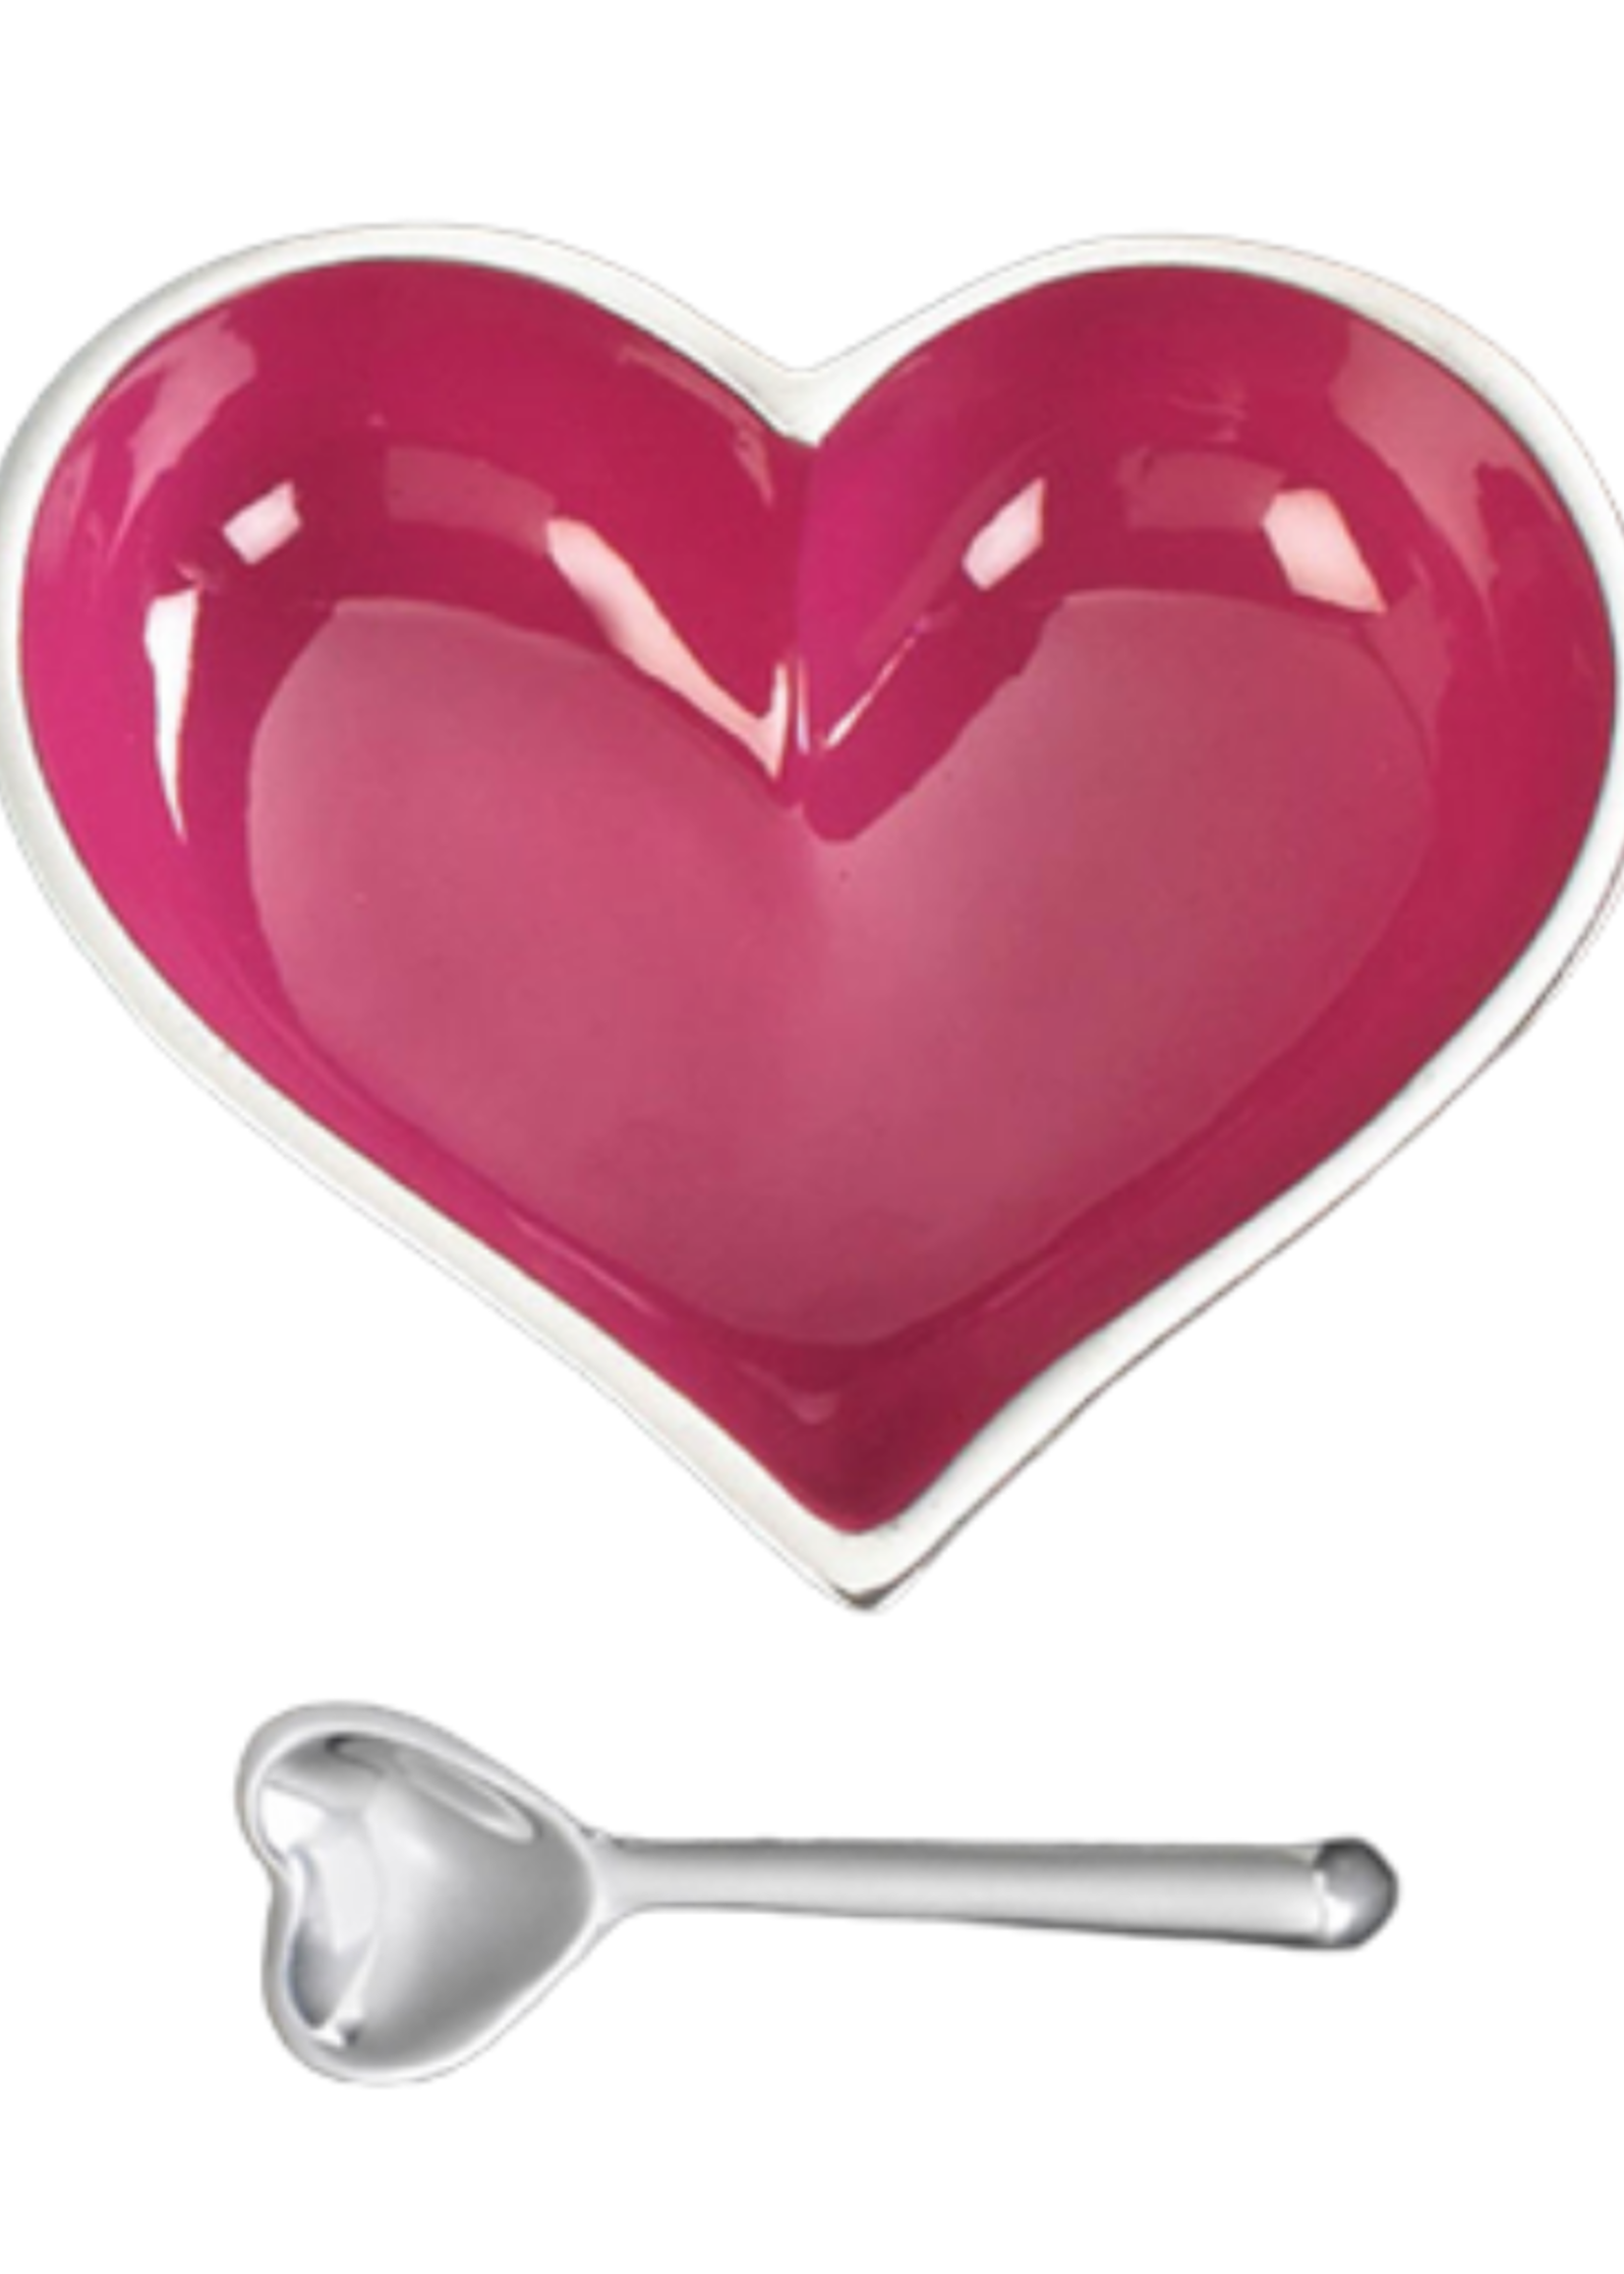 Happy Heart Bowl w Spoon // Pink